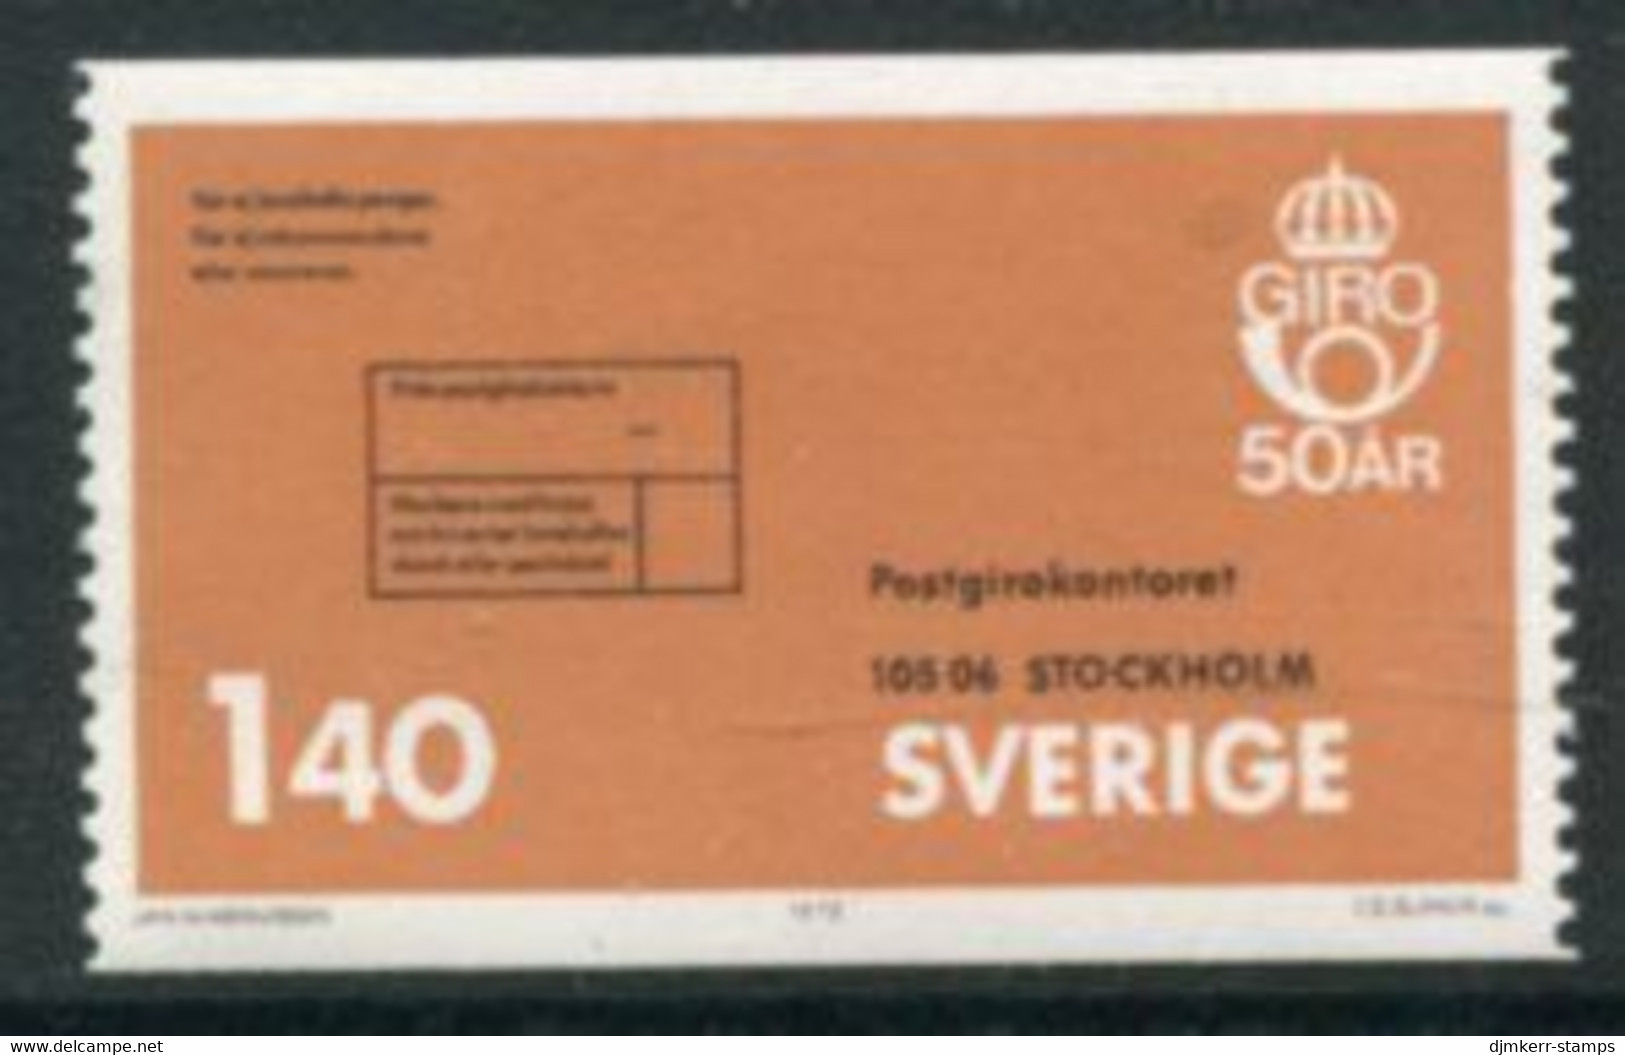 SWEDEN 1975 Postal Cheques MNH / **..  Michel 891 - Nuovi